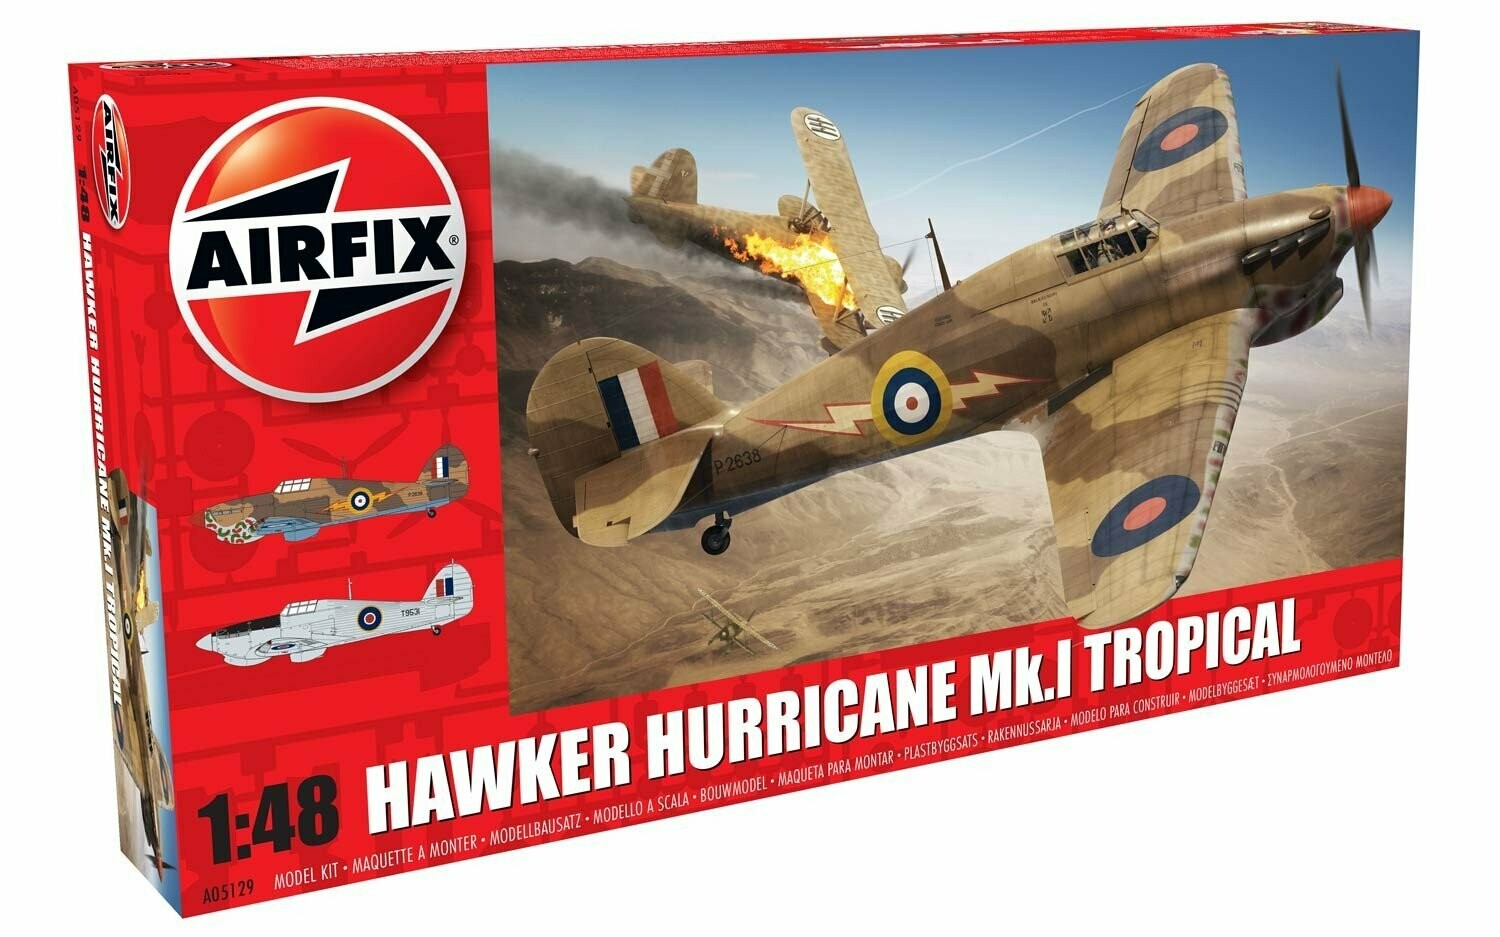 Airfix A05129 1/48 Hawker Hurricane Mk1. Tropical